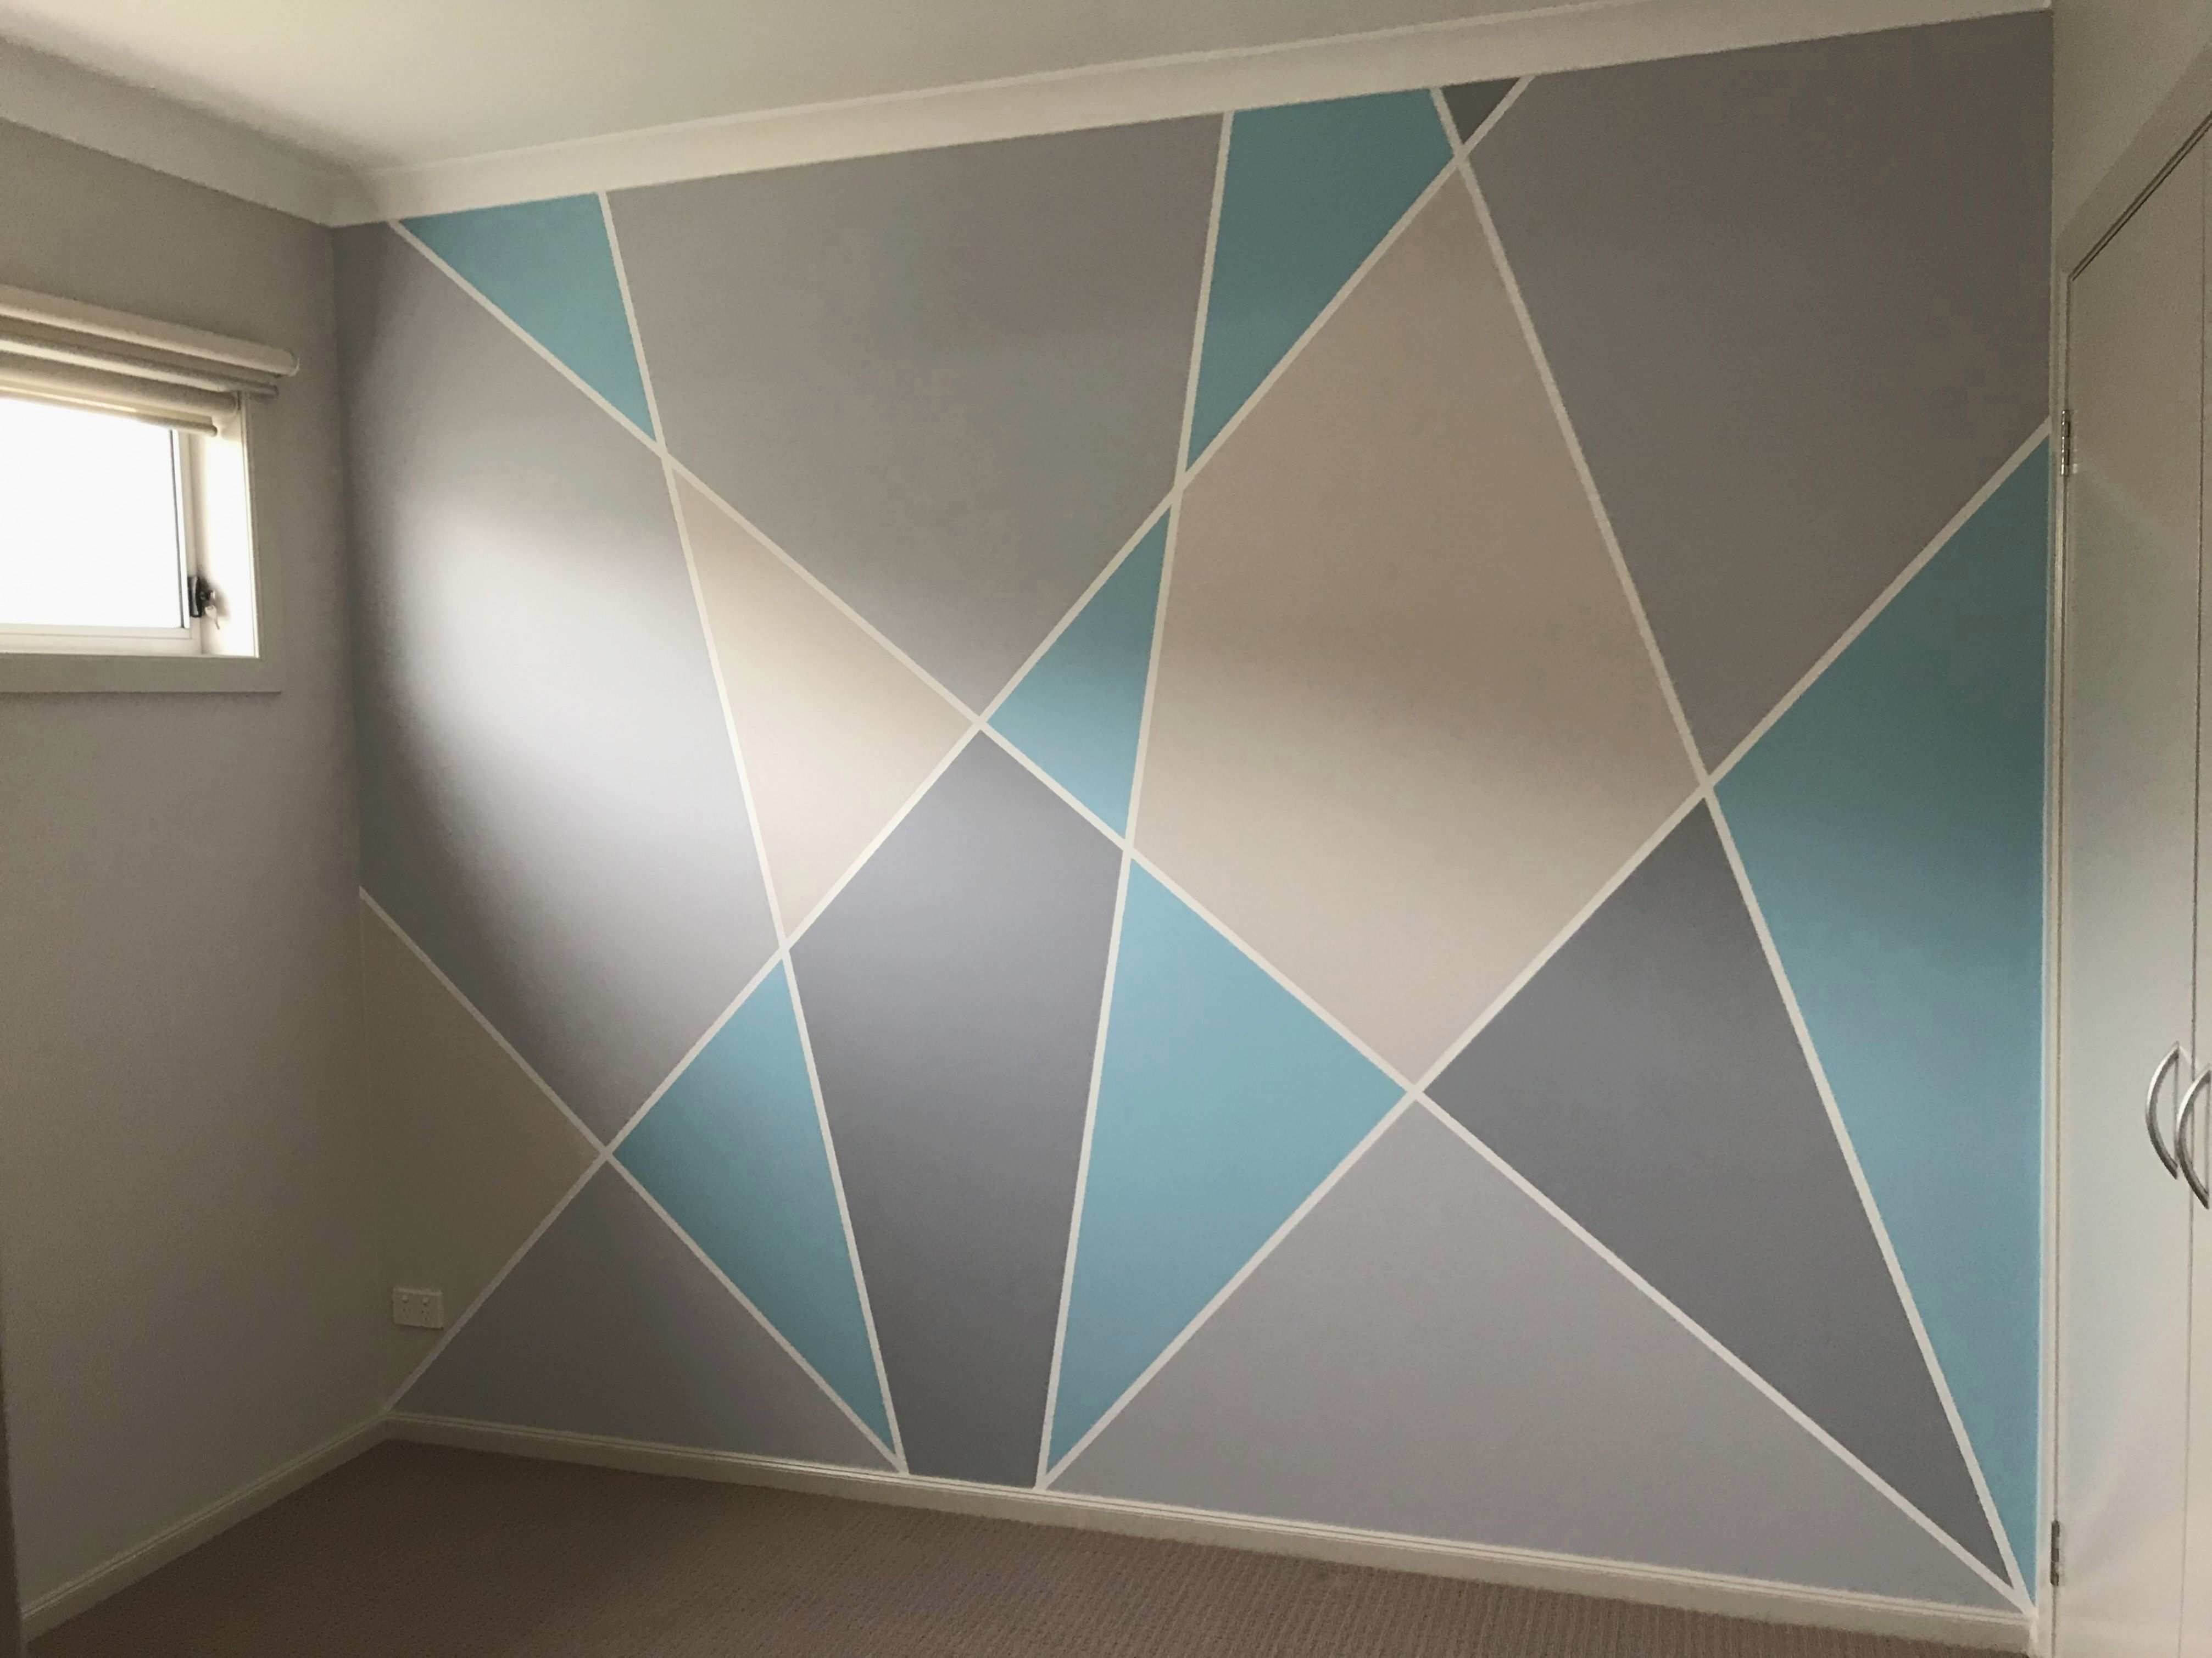 Geometrische Wand Muster Und Farben Fur Ein Tween Madchen 2020 Yatak Odasi Duvar Boyalari Yatak Odasi Duvar Tasarimlari Duvar Renkleri